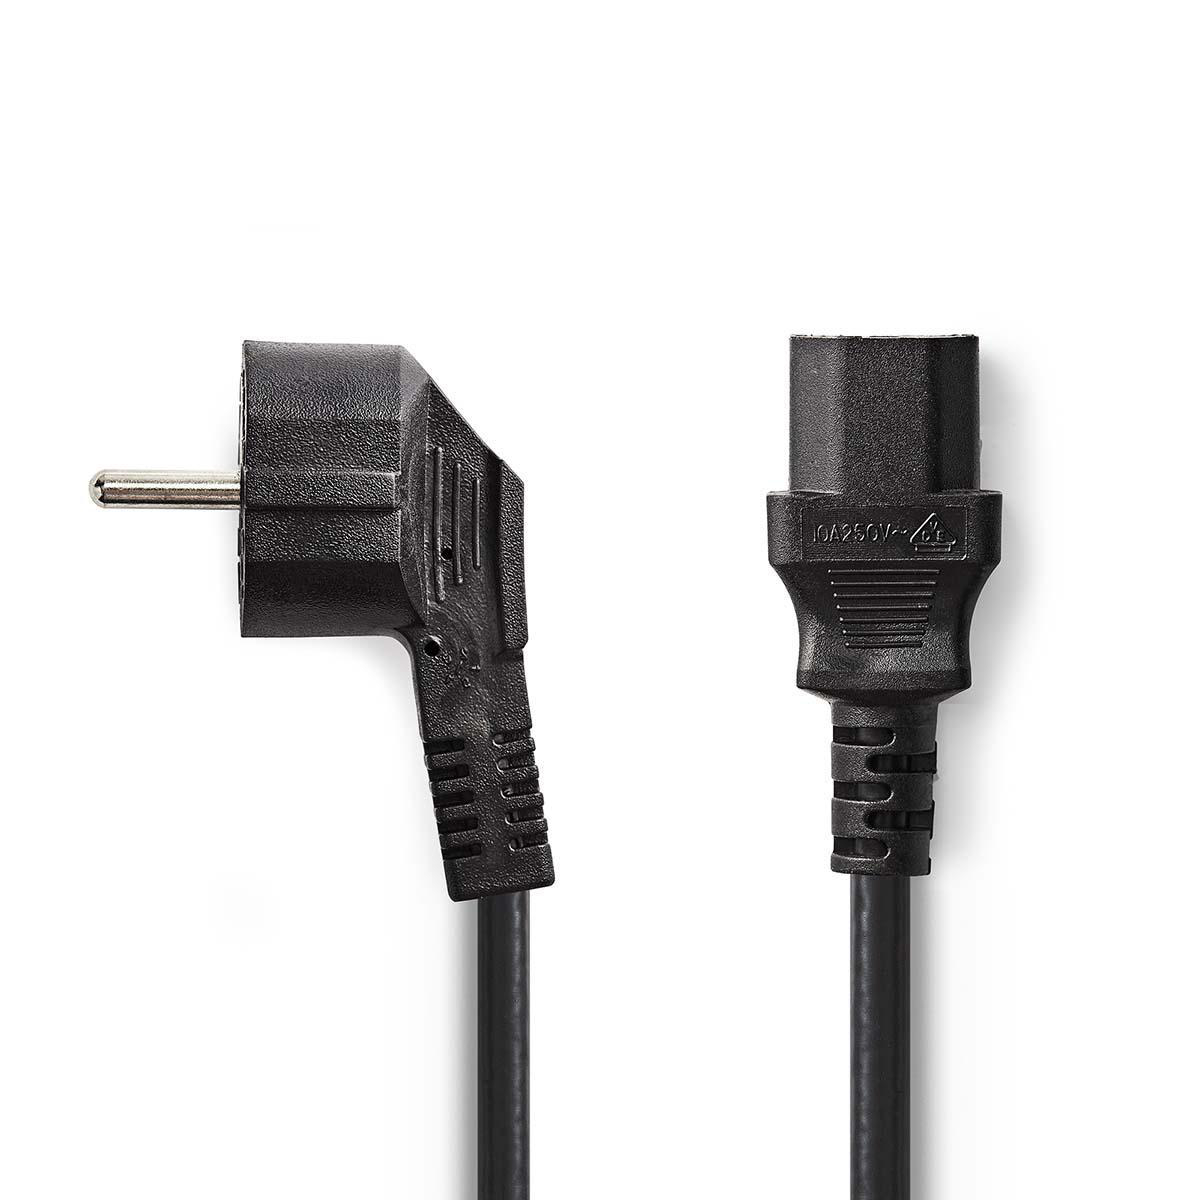 Napájecí Kabel | Úhlová zástrčka Schuko - IEC-320-C13 | 2 m | Černá barva